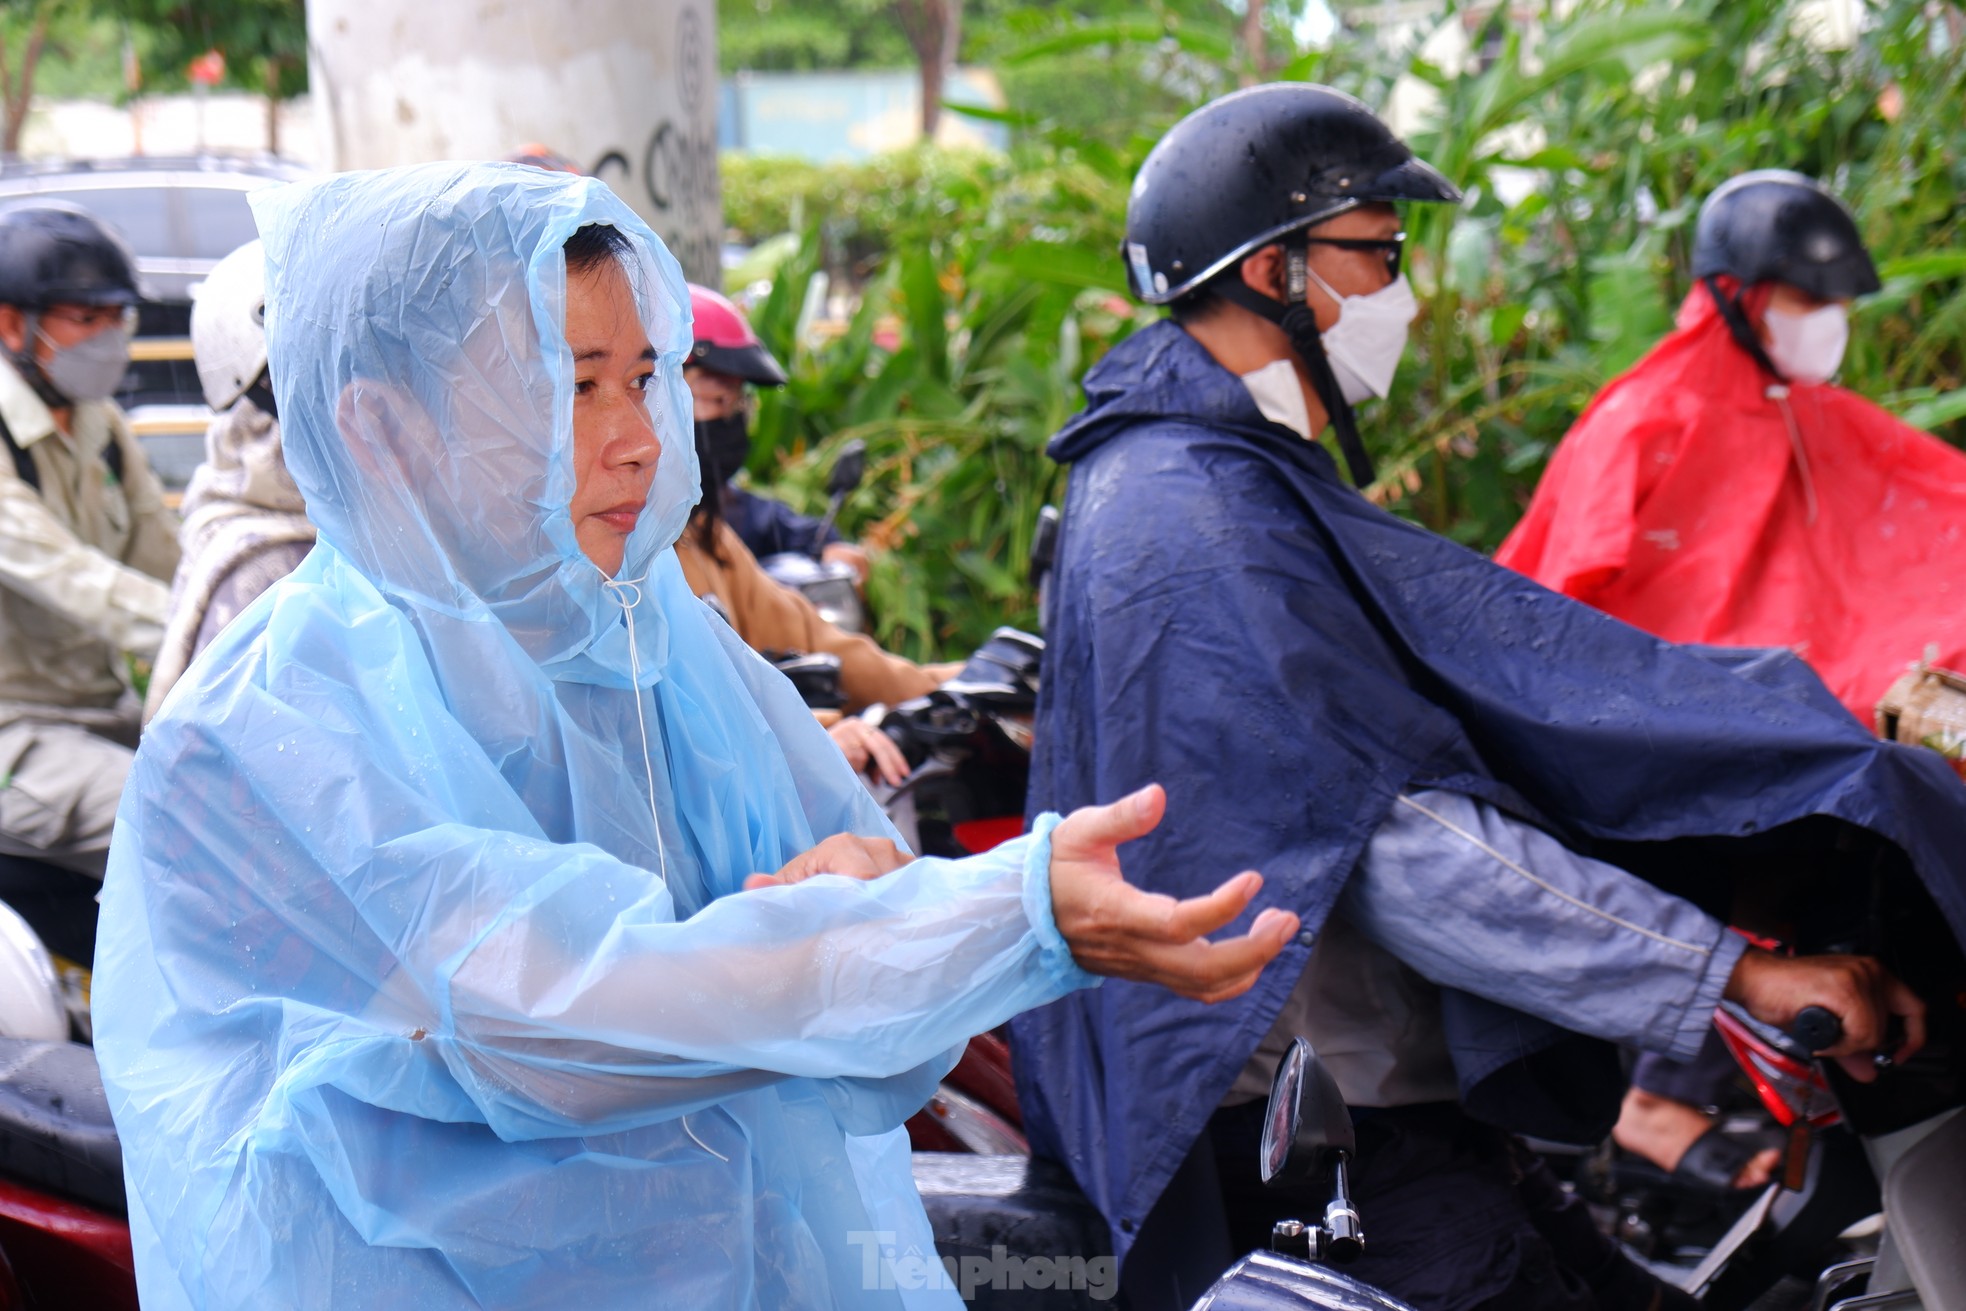 TPHCM bất chợt 'mưa vàng', nhiều người bị té ngã vì đường trơn ảnh 3